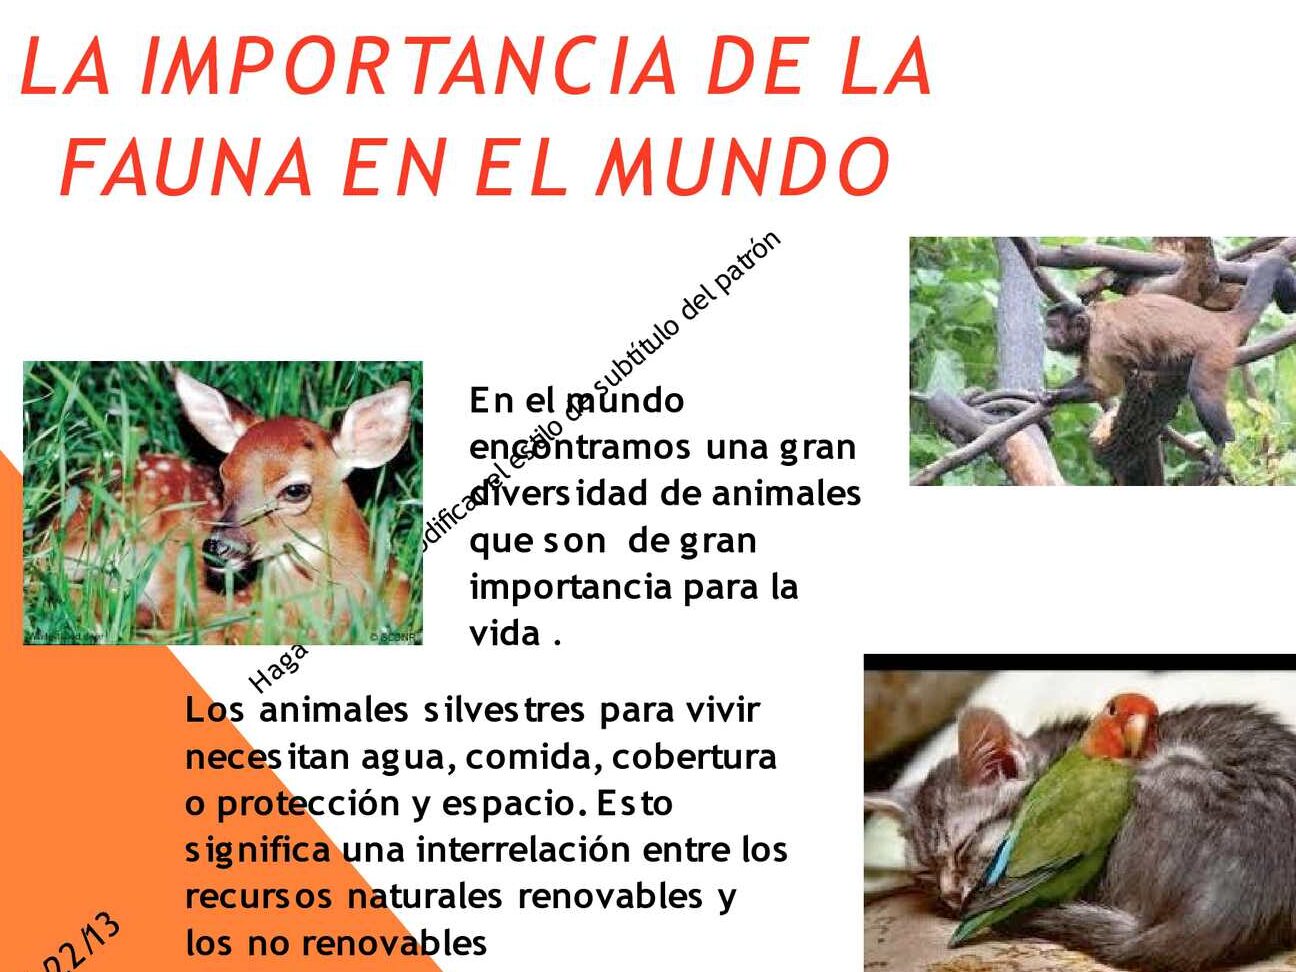 La flora y fauna: vida vegetal y animal.